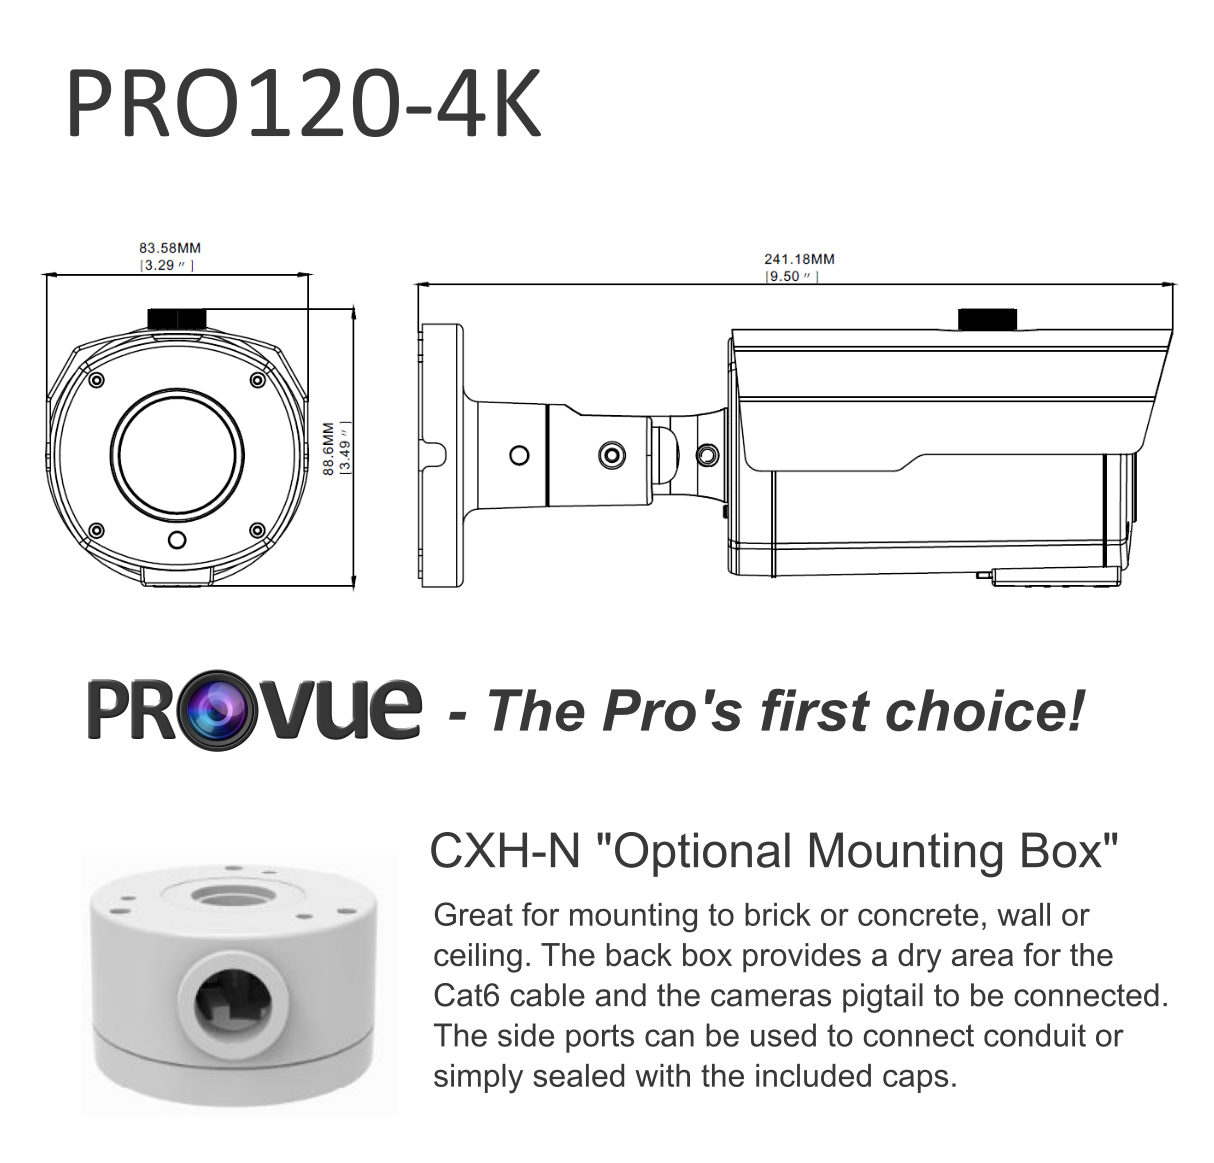 Pro120-4k details